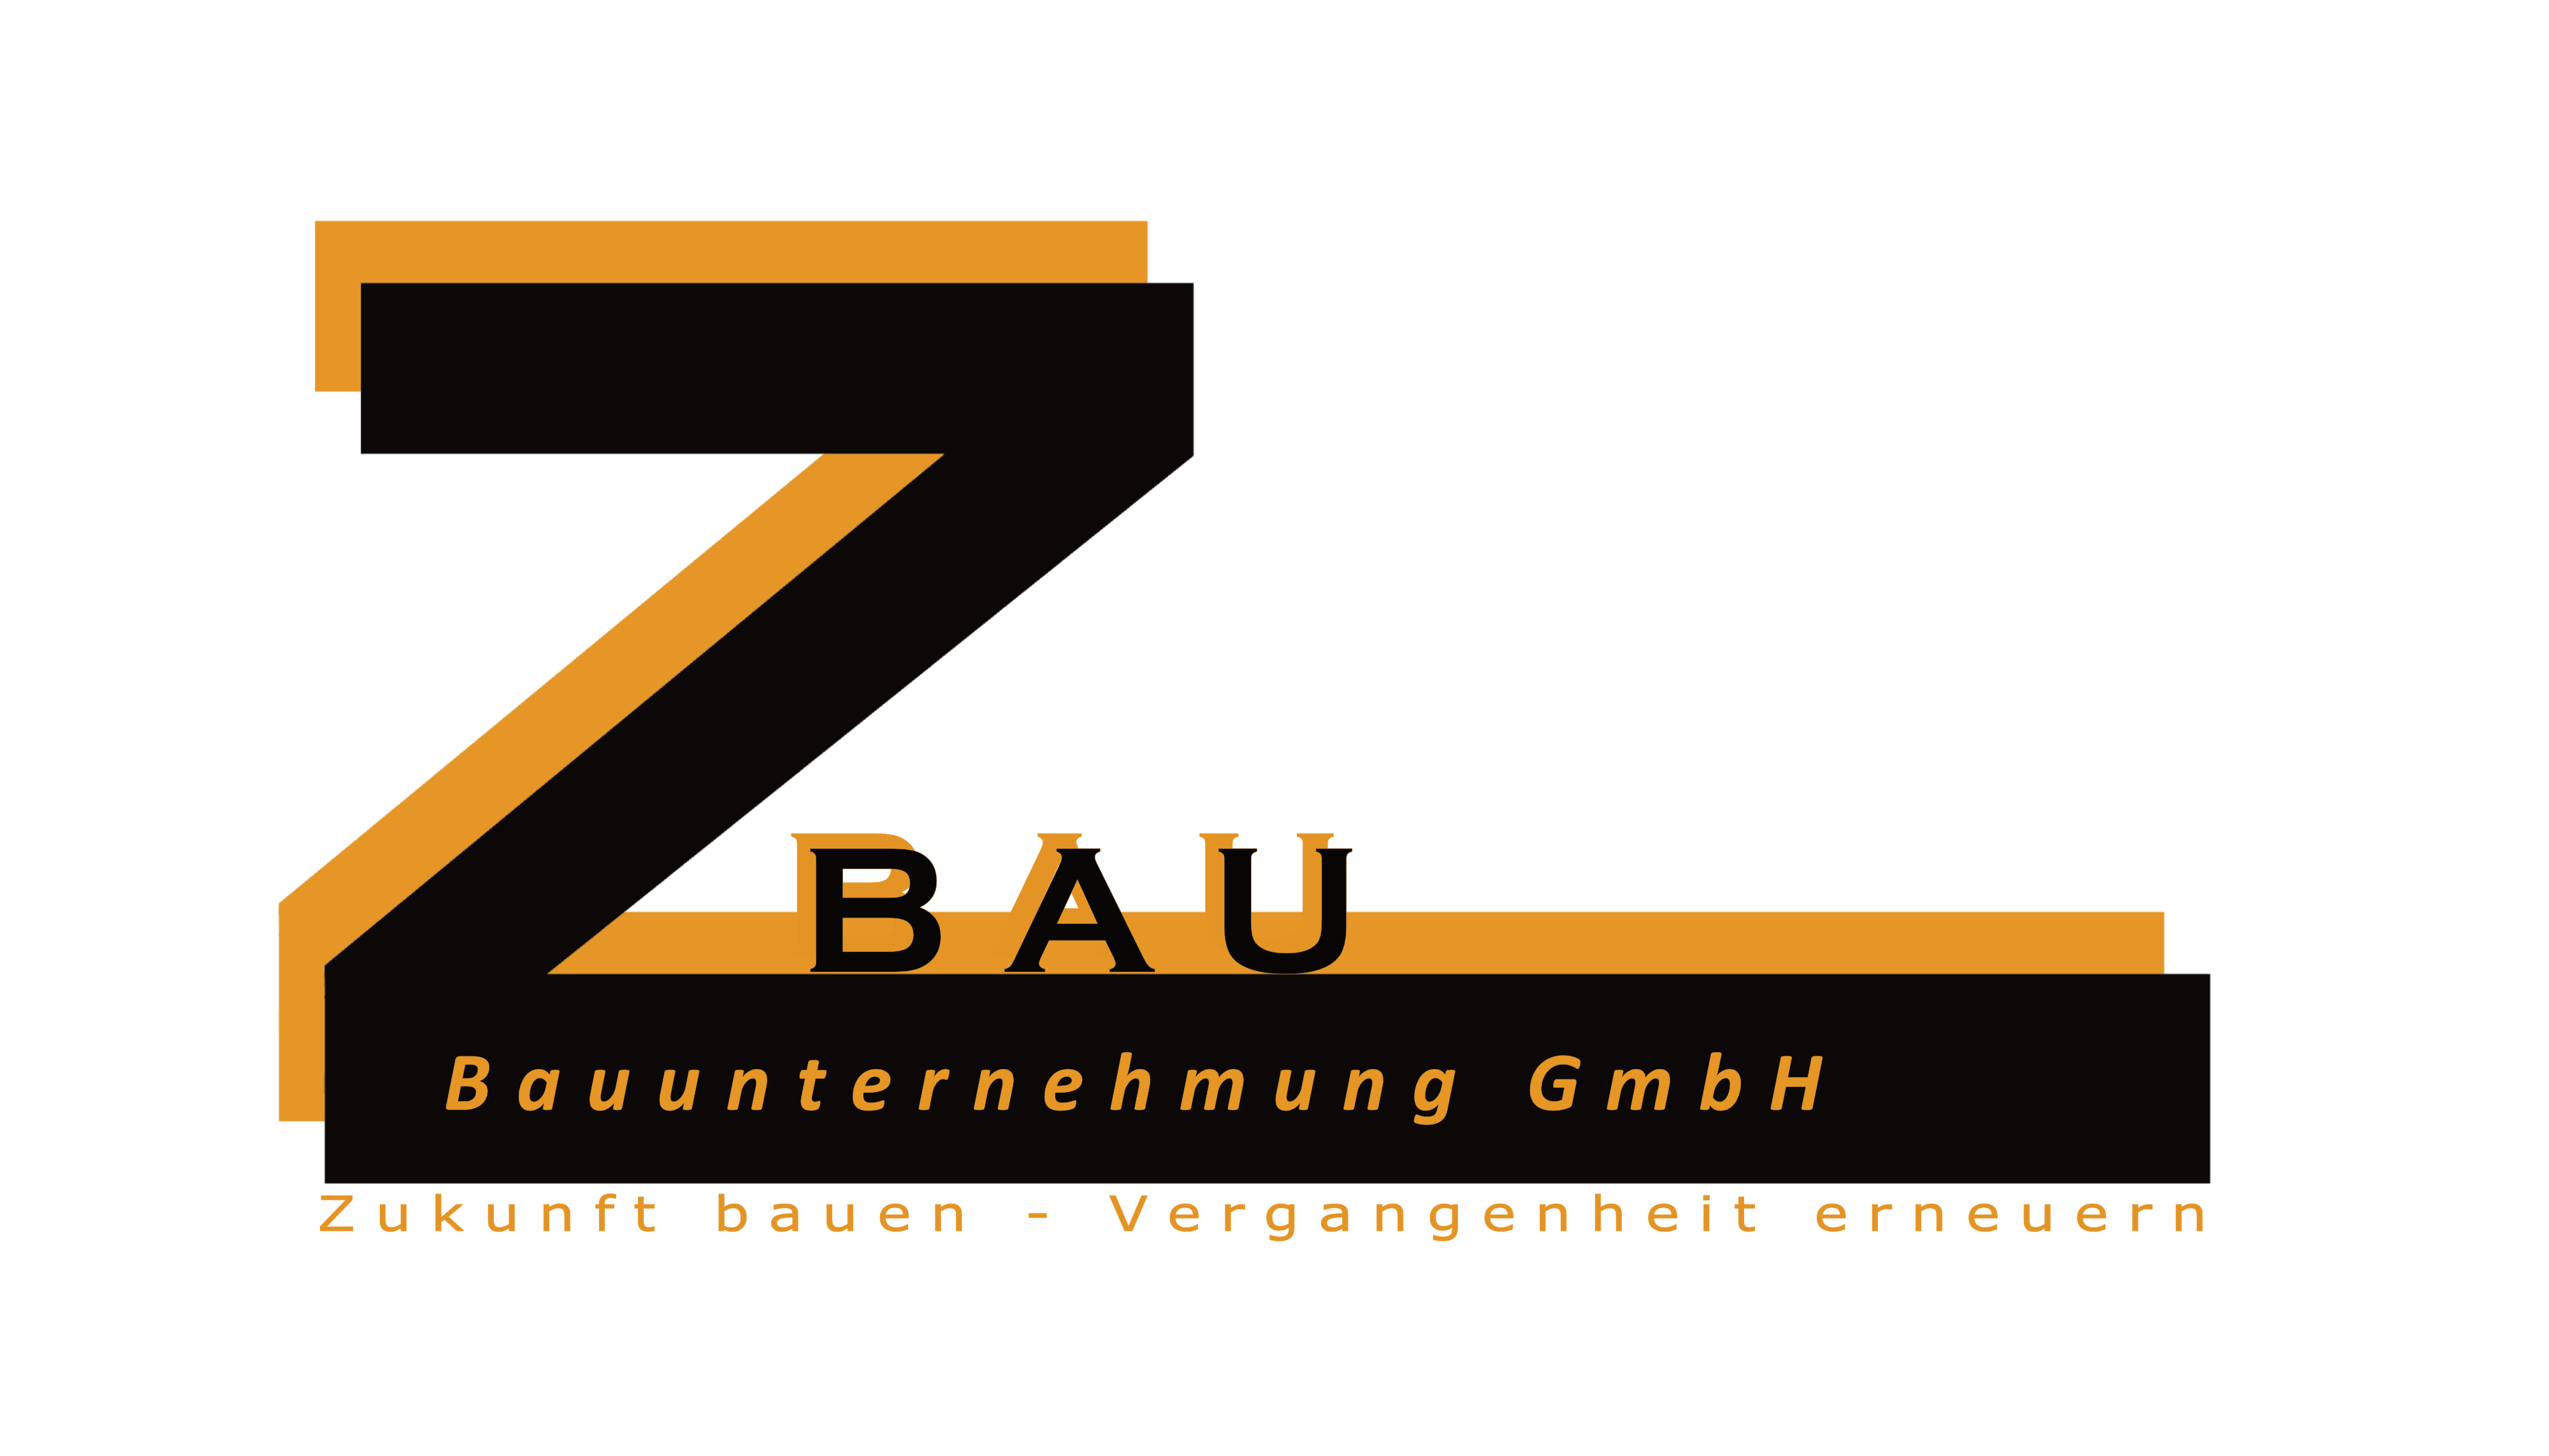 Z-Bau Bauunternehmung GmbH